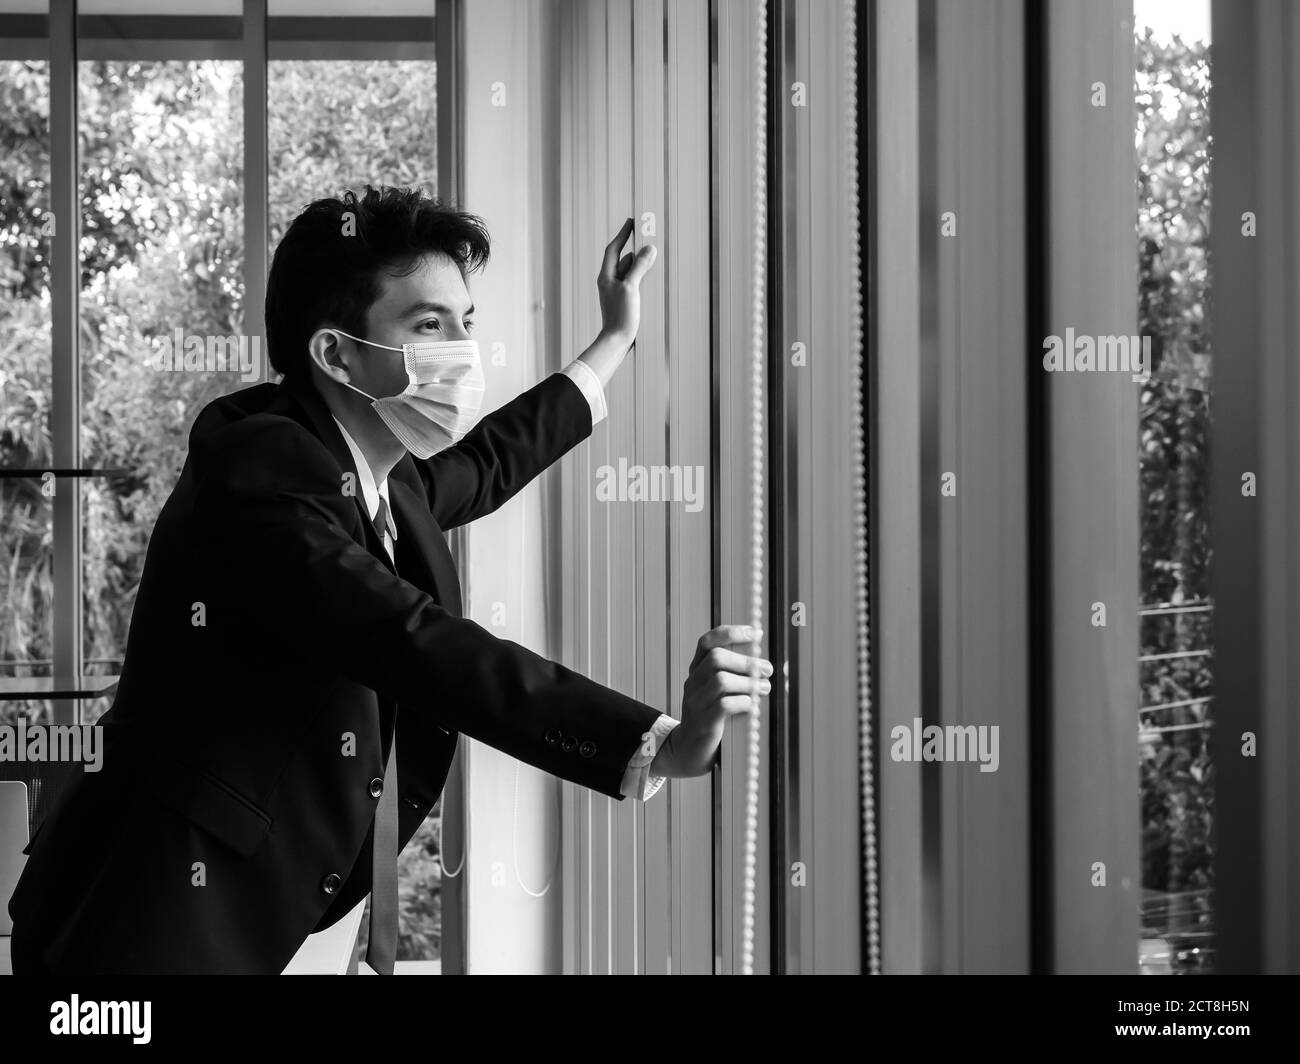 Hombre de negocios asiático solitario y cansado en traje con máscara médica de pie y mirando por la ventana de cristal en la oficina en blanco y negro estilo Fotografía stock -